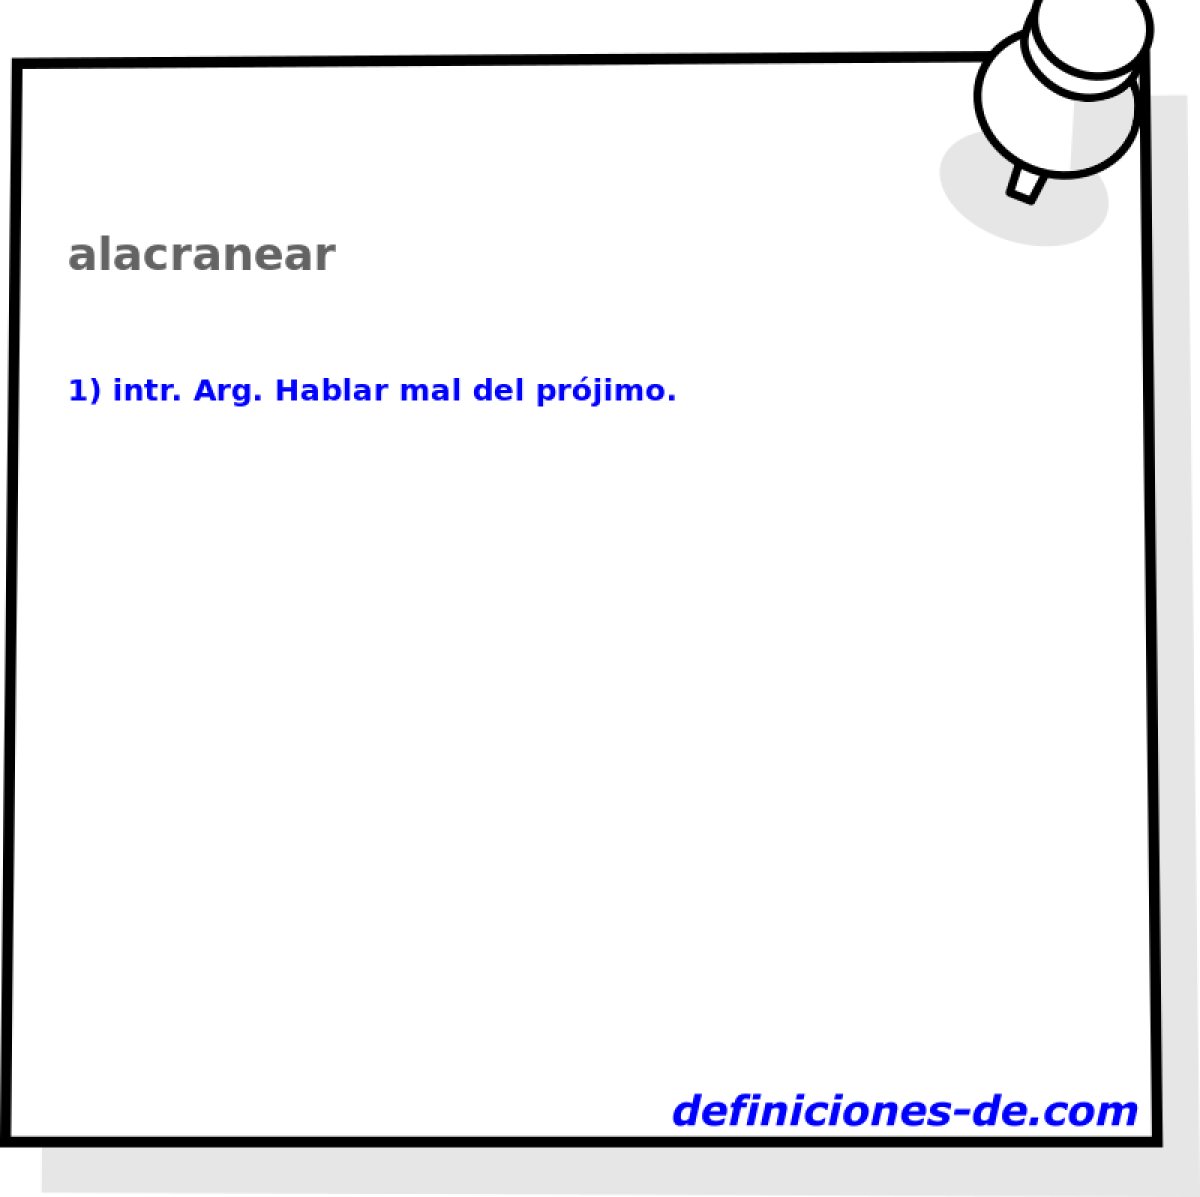 alacranear 